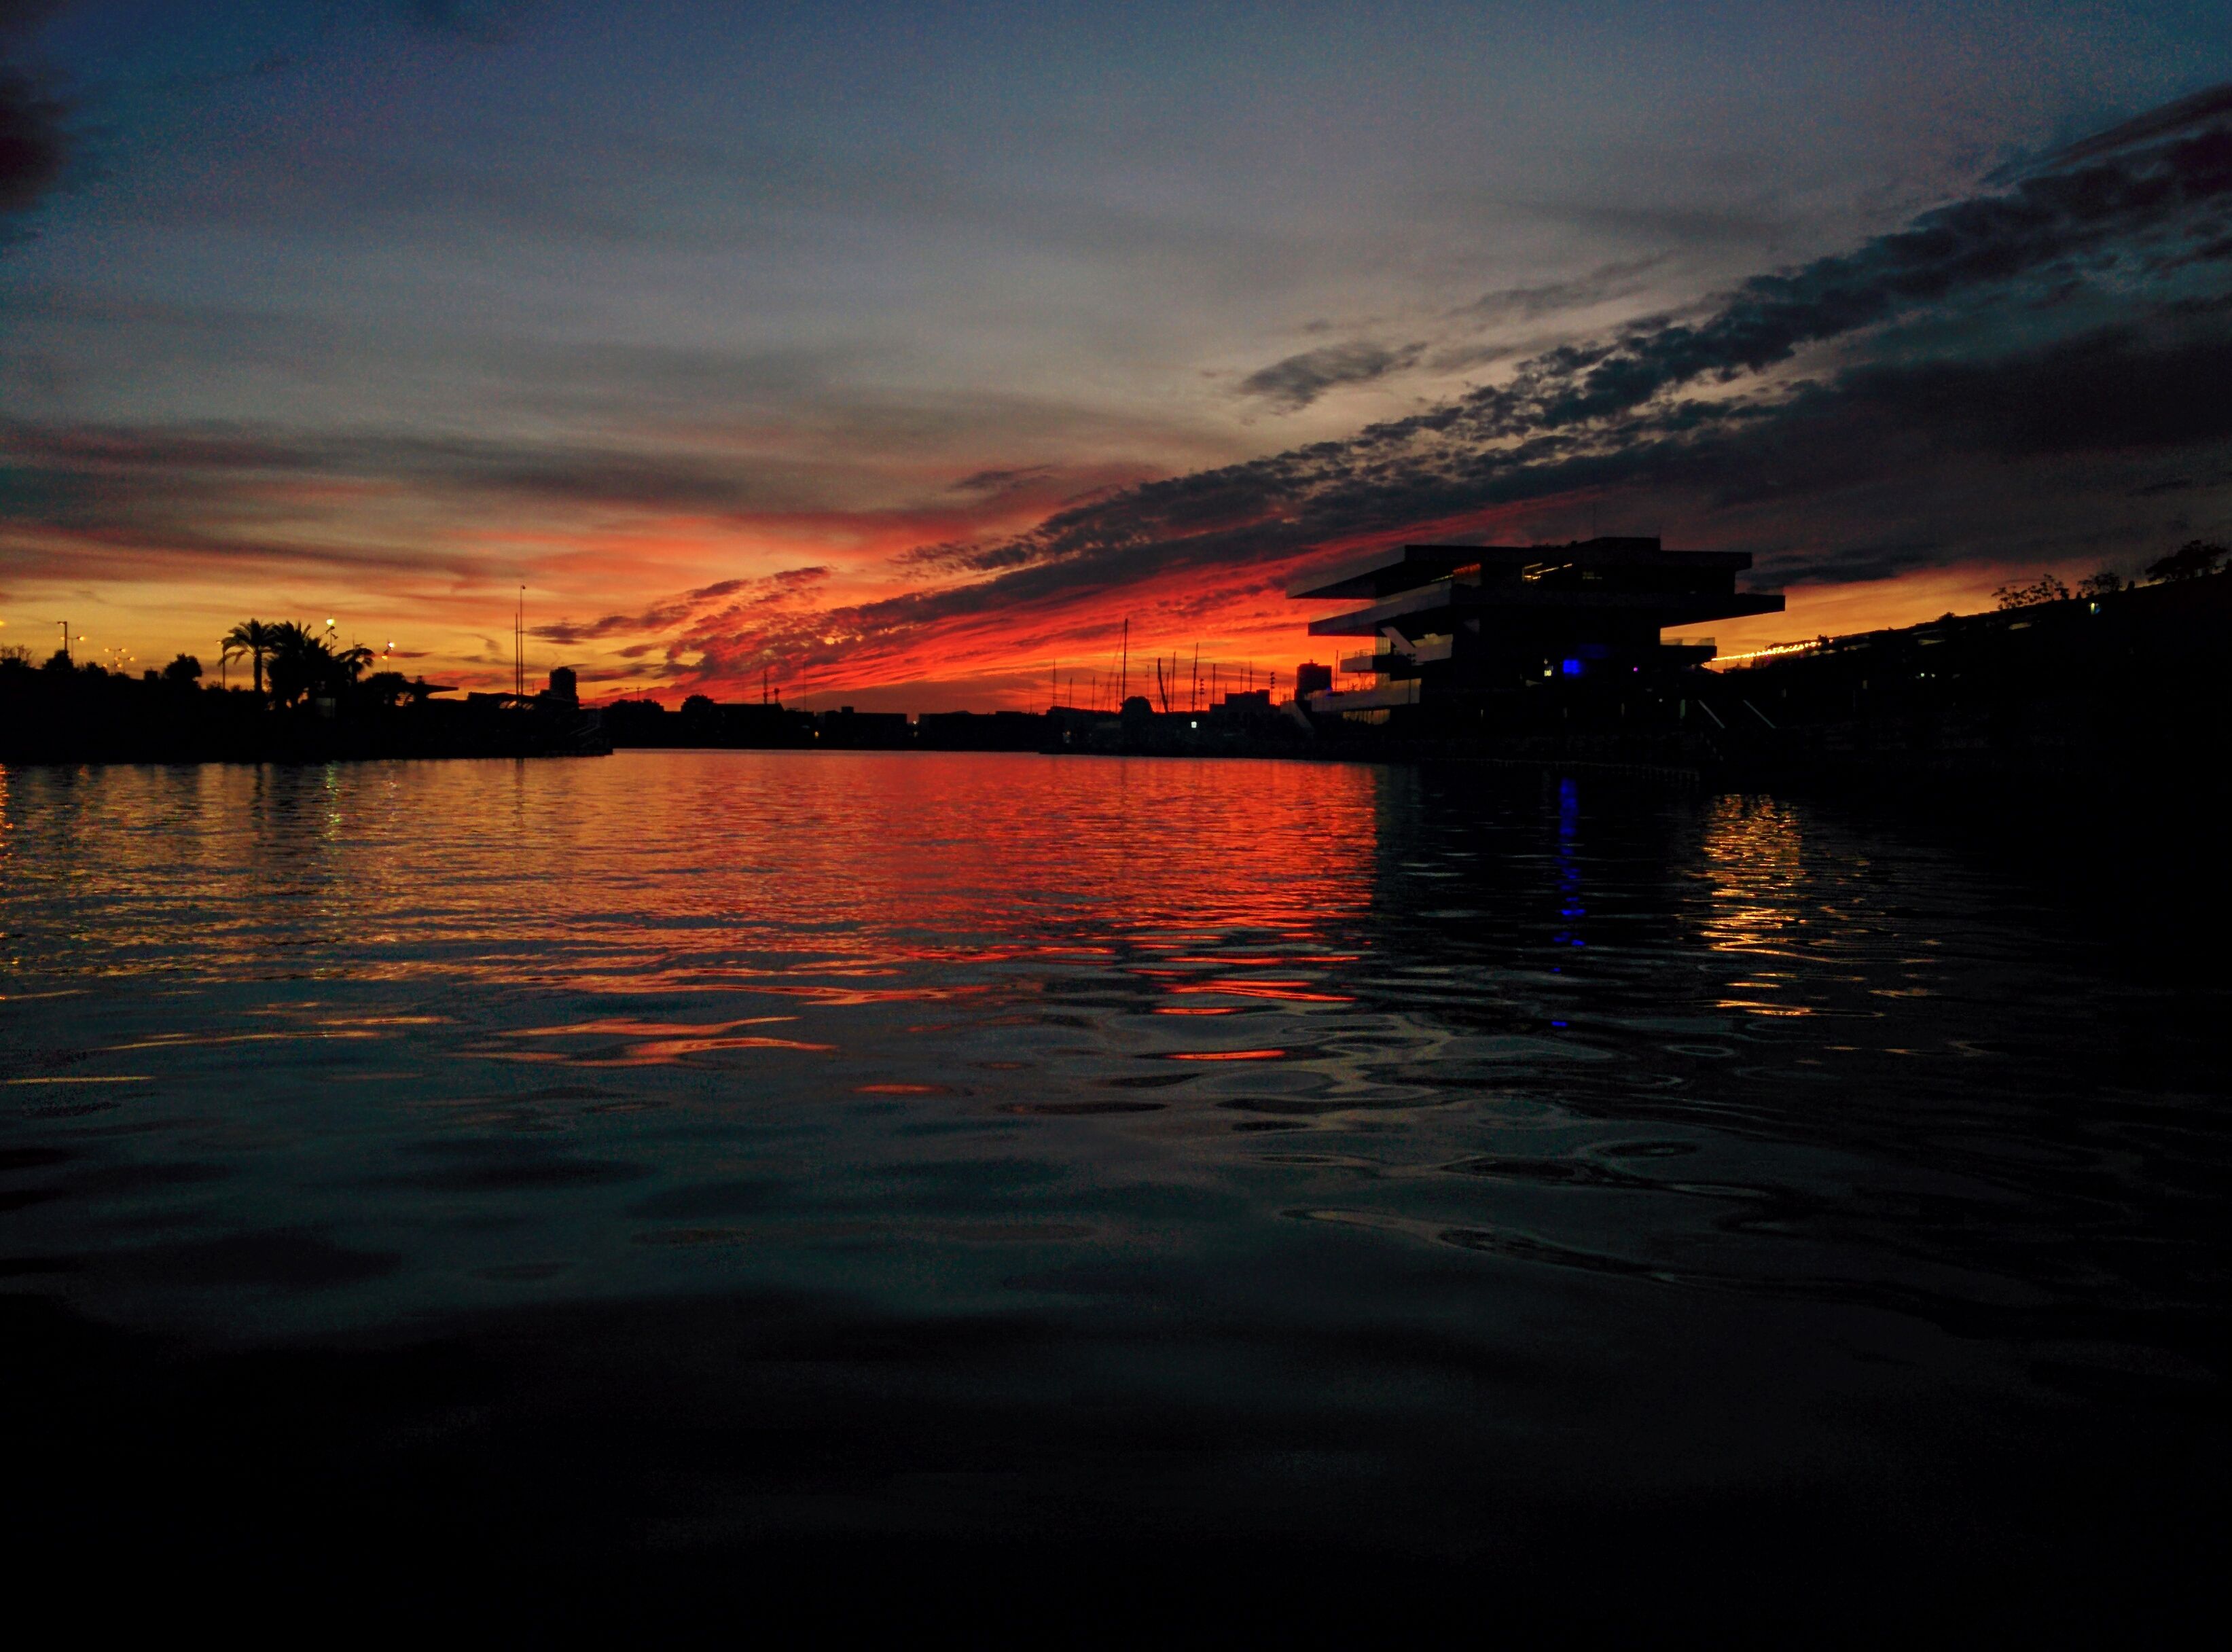 atardecer-valencia-puerto-puesta-de-sol-cielo-rojo-nubes-precioso-bello-steemit-trenz-fotografia_12.jpg